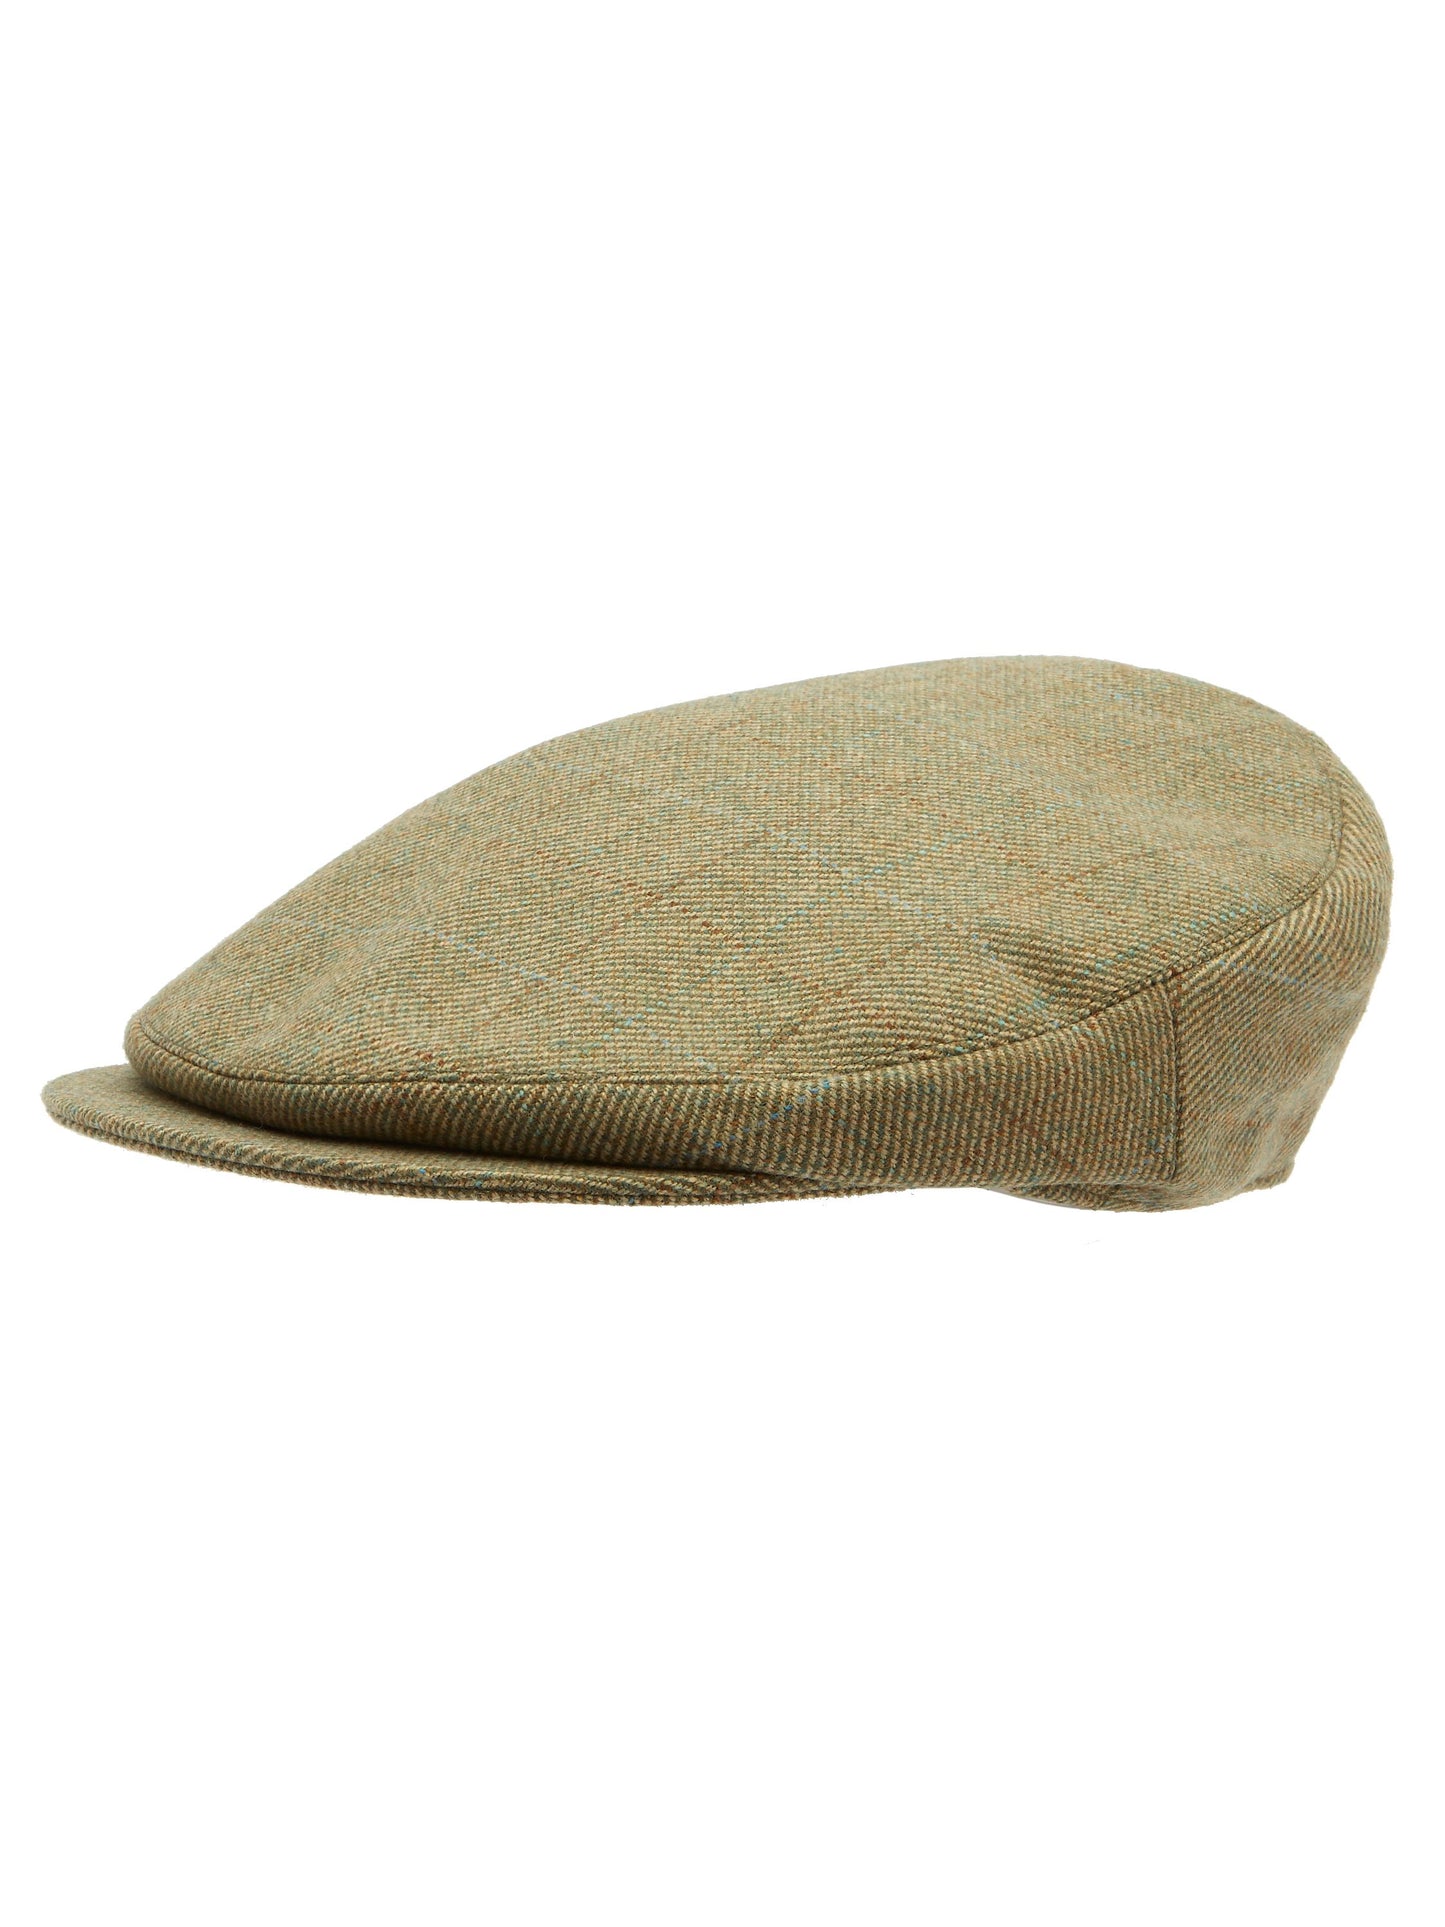 Helmsley Cap - Ayr Tweed